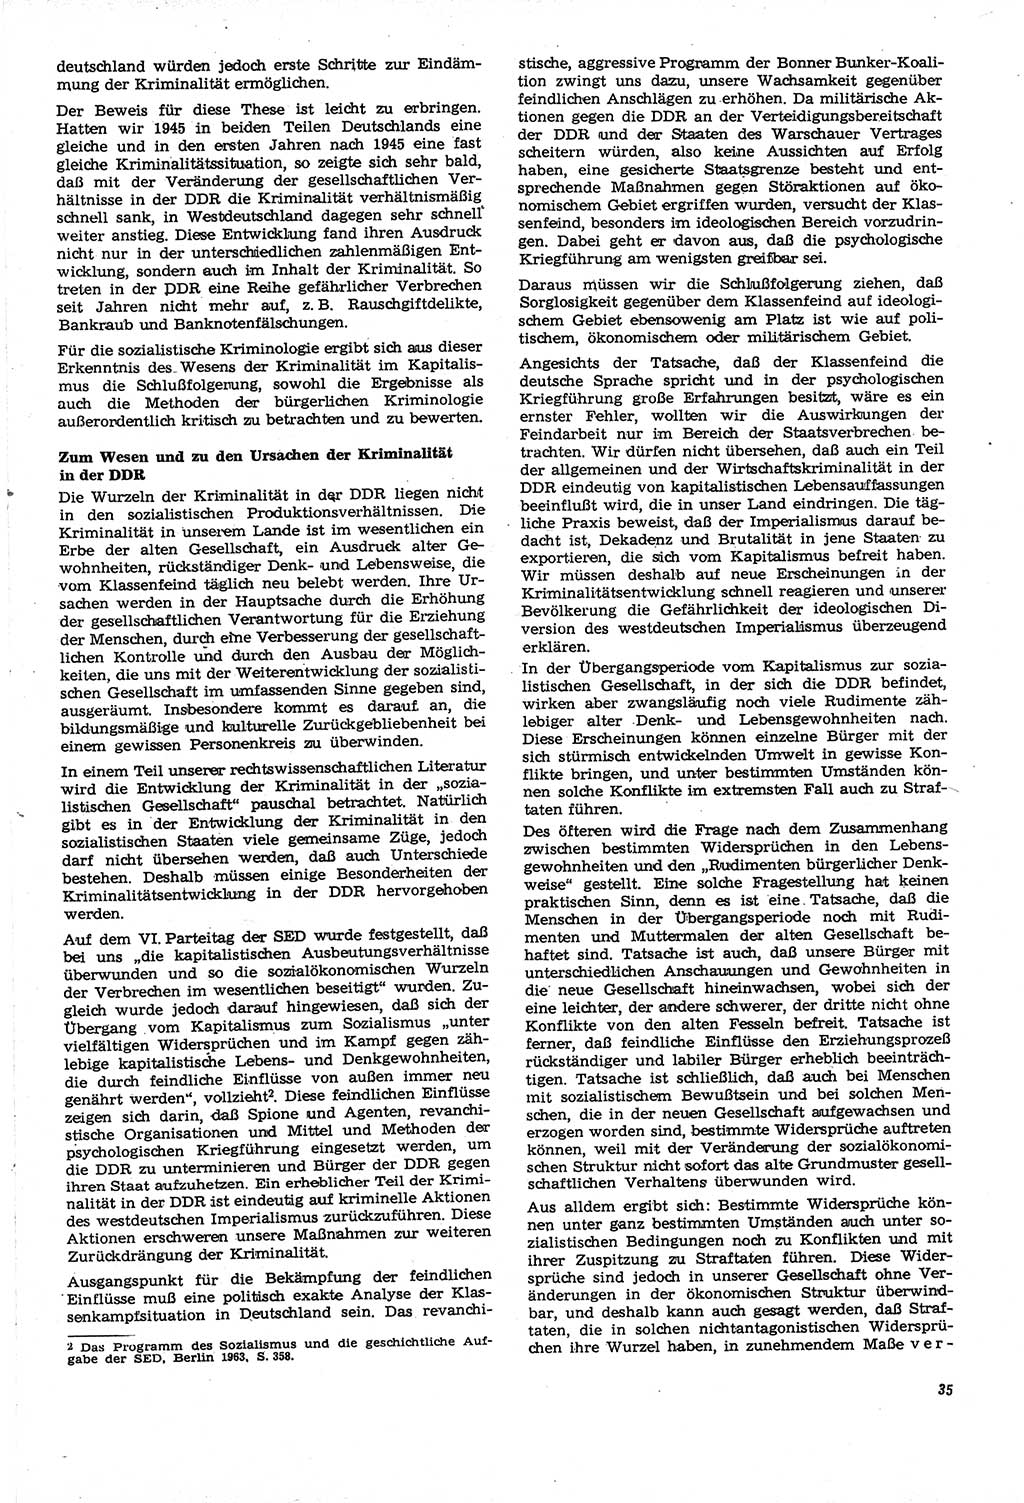 Neue Justiz (NJ), Zeitschrift für Recht und Rechtswissenschaft [Deutsche Demokratische Republik (DDR)], 21. Jahrgang 1967, Seite 35 (NJ DDR 1967, S. 35)